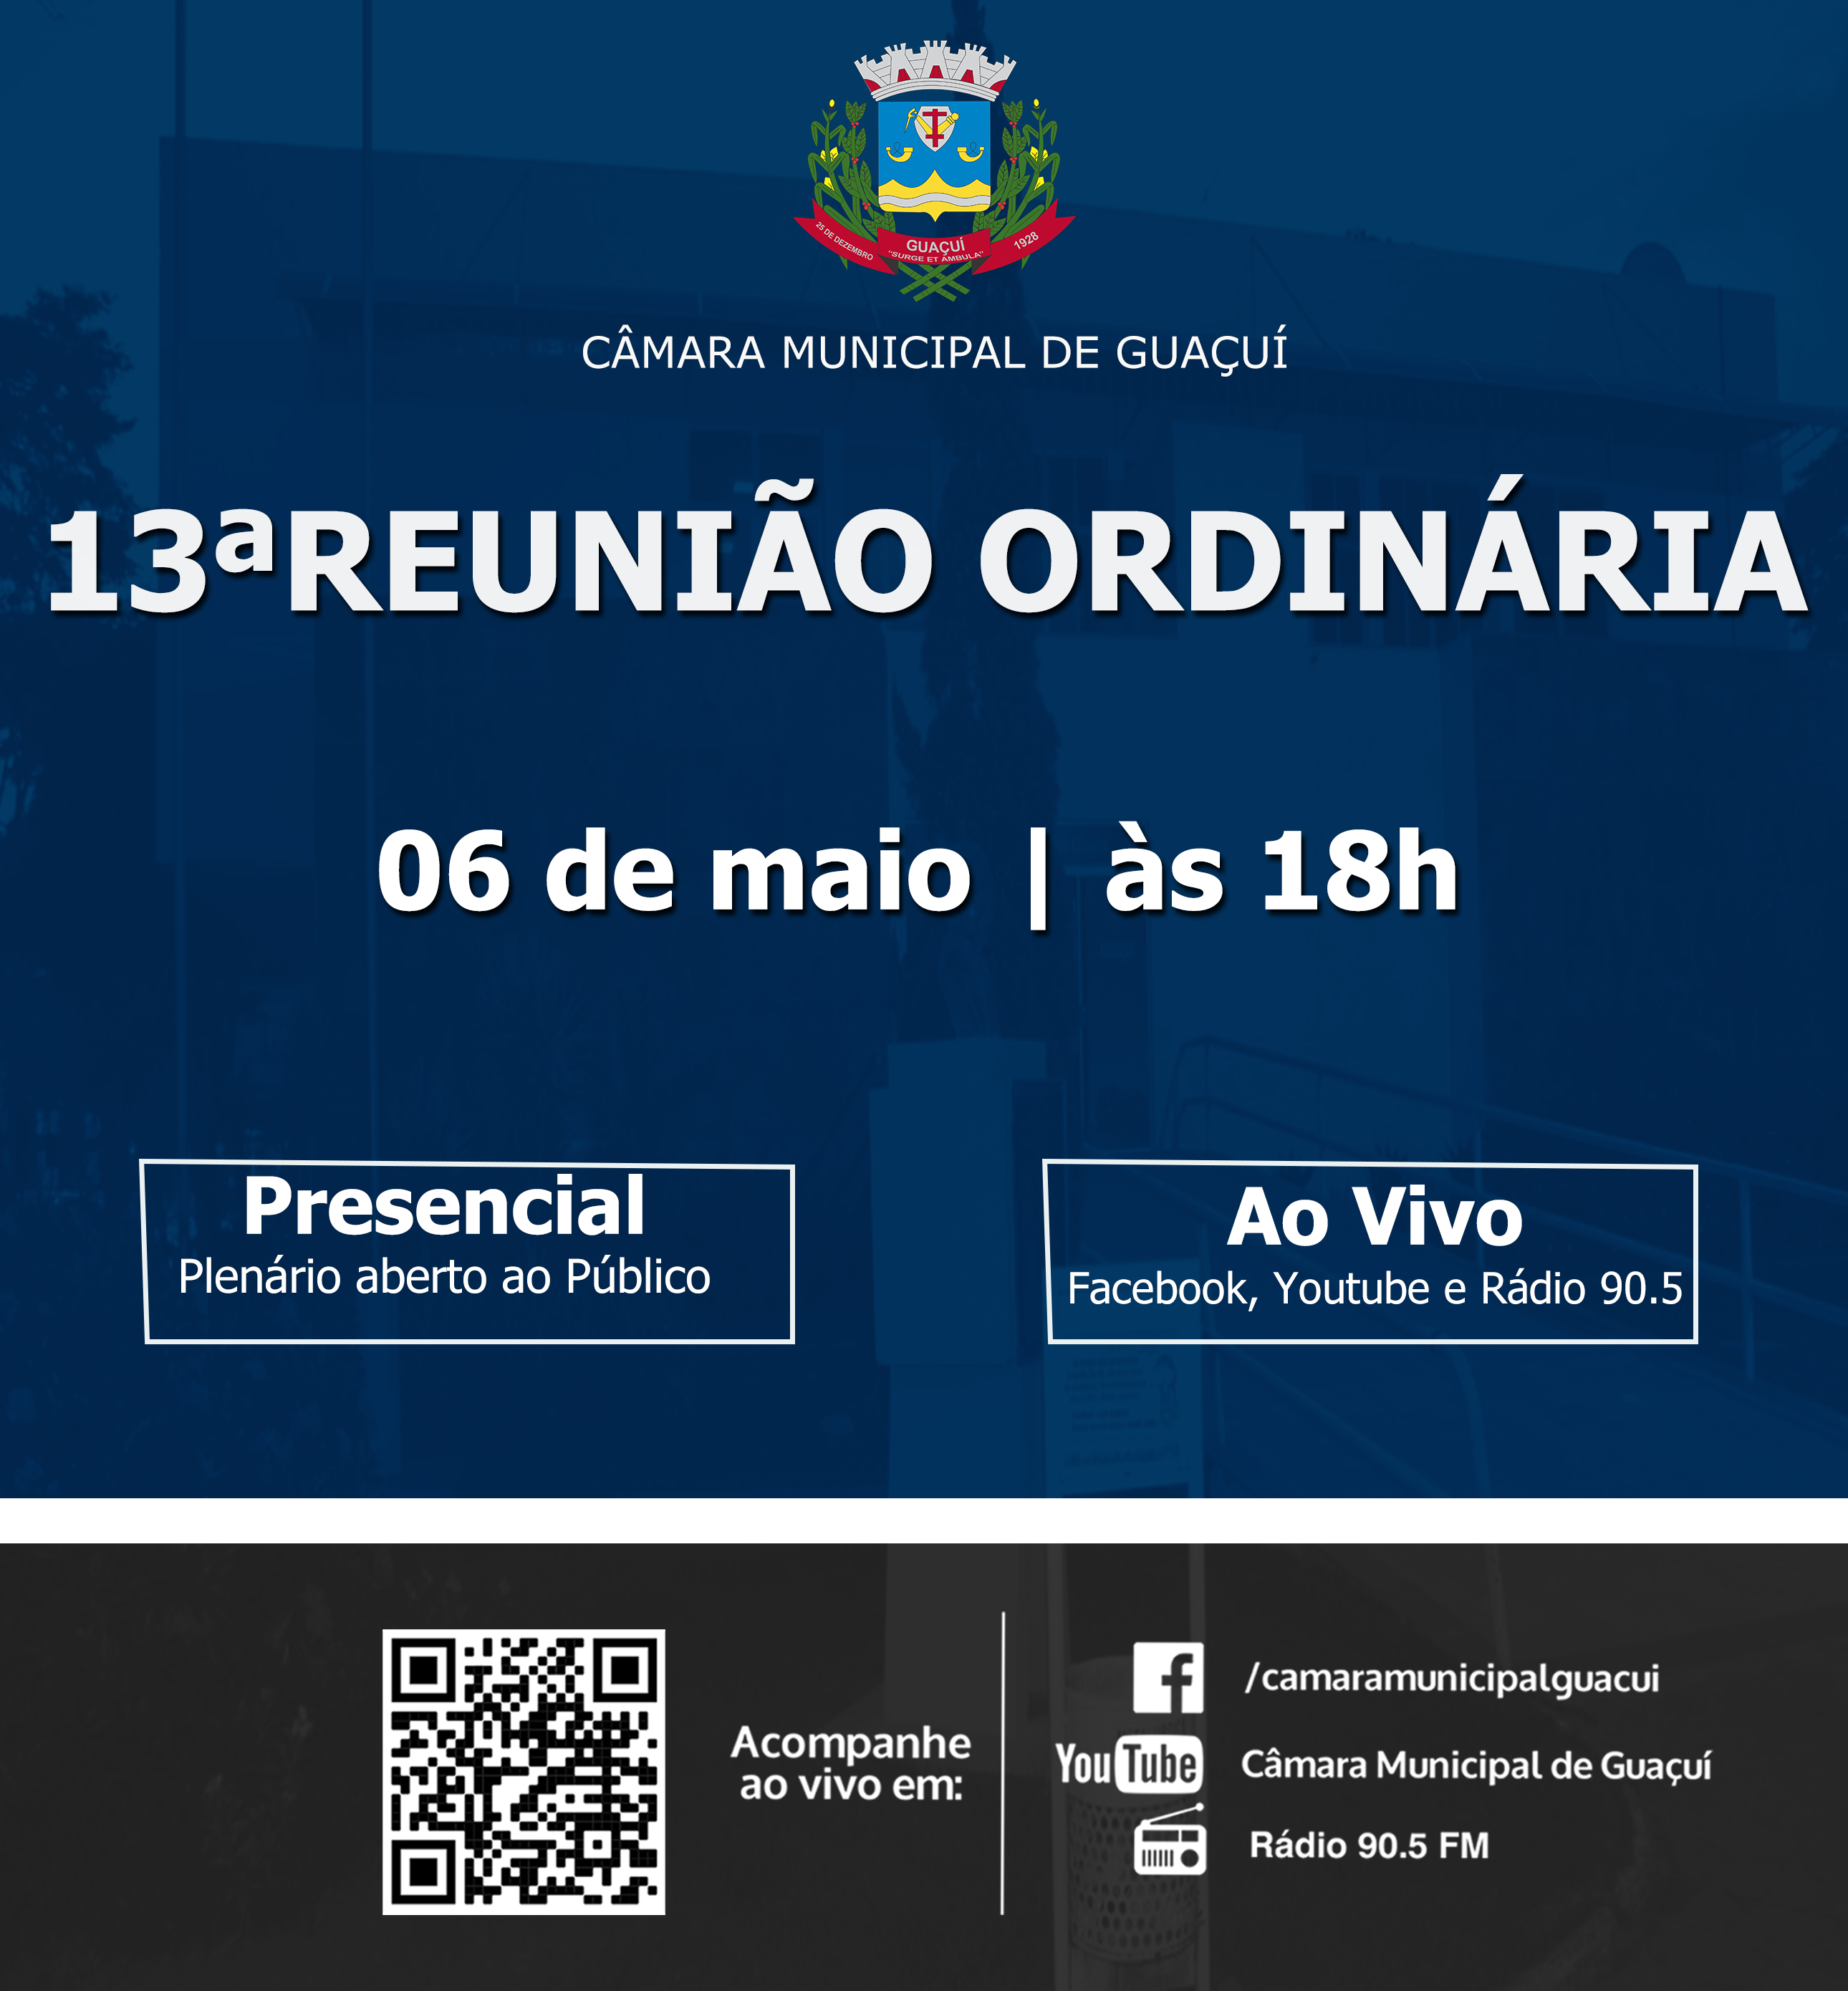 13ª REUNIÃO ORDINÁRIA.